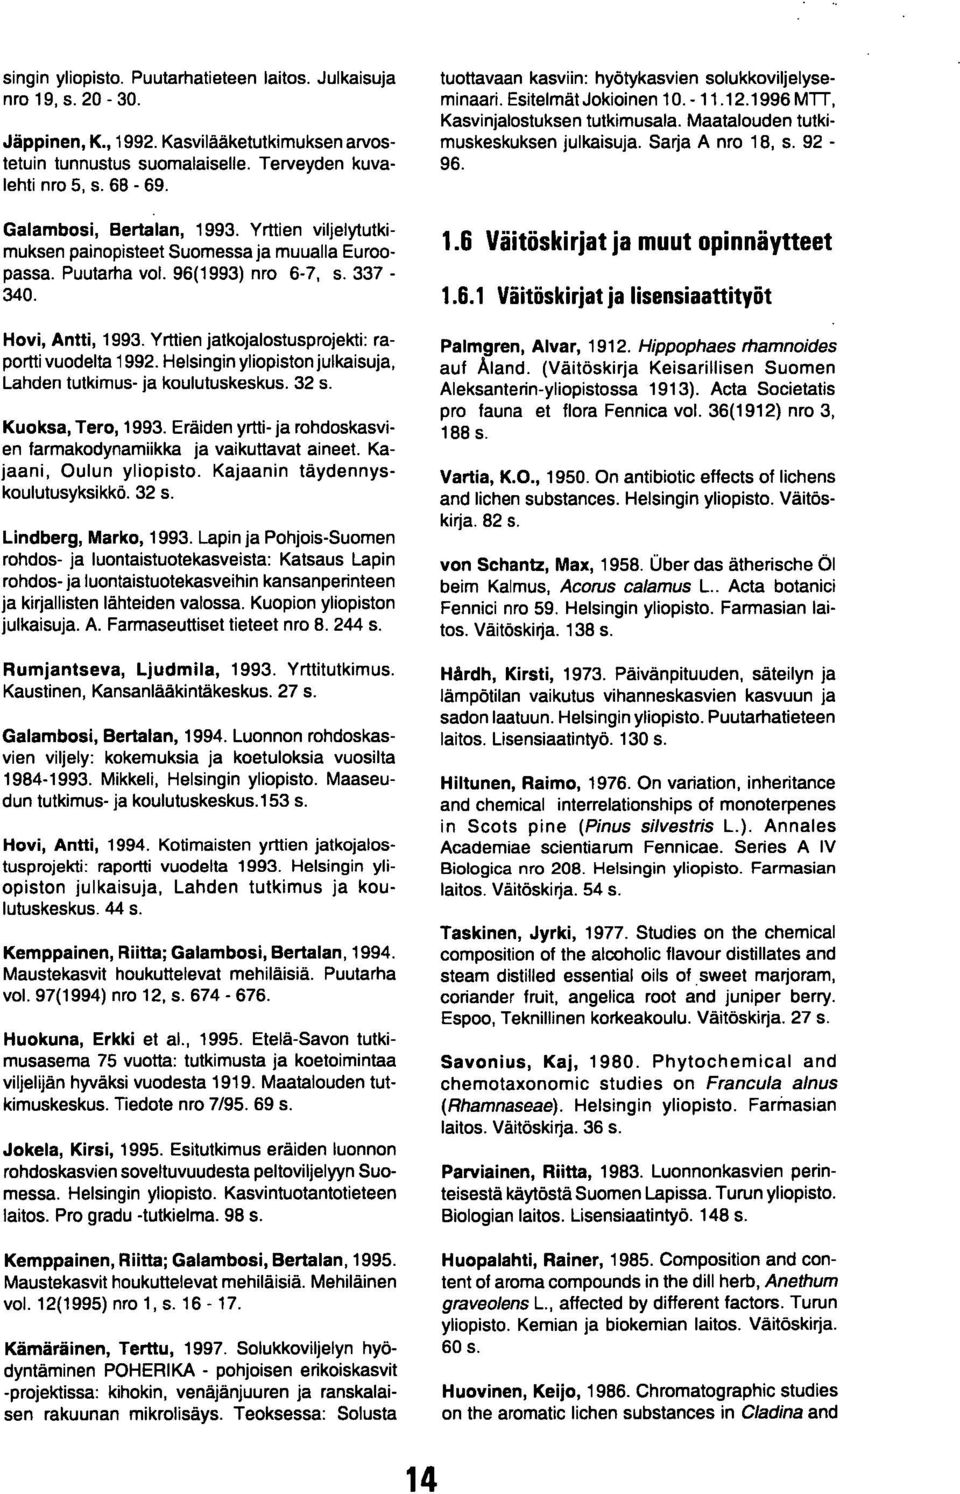 Yrttien jatkojalostusprojekti: raportti vuodelta 1992. Helsingin yliopiston julkaisuja, Lahden tutkimus- ja koulutuskeskus. 32 s. Kuoksa, Tero, 1993.